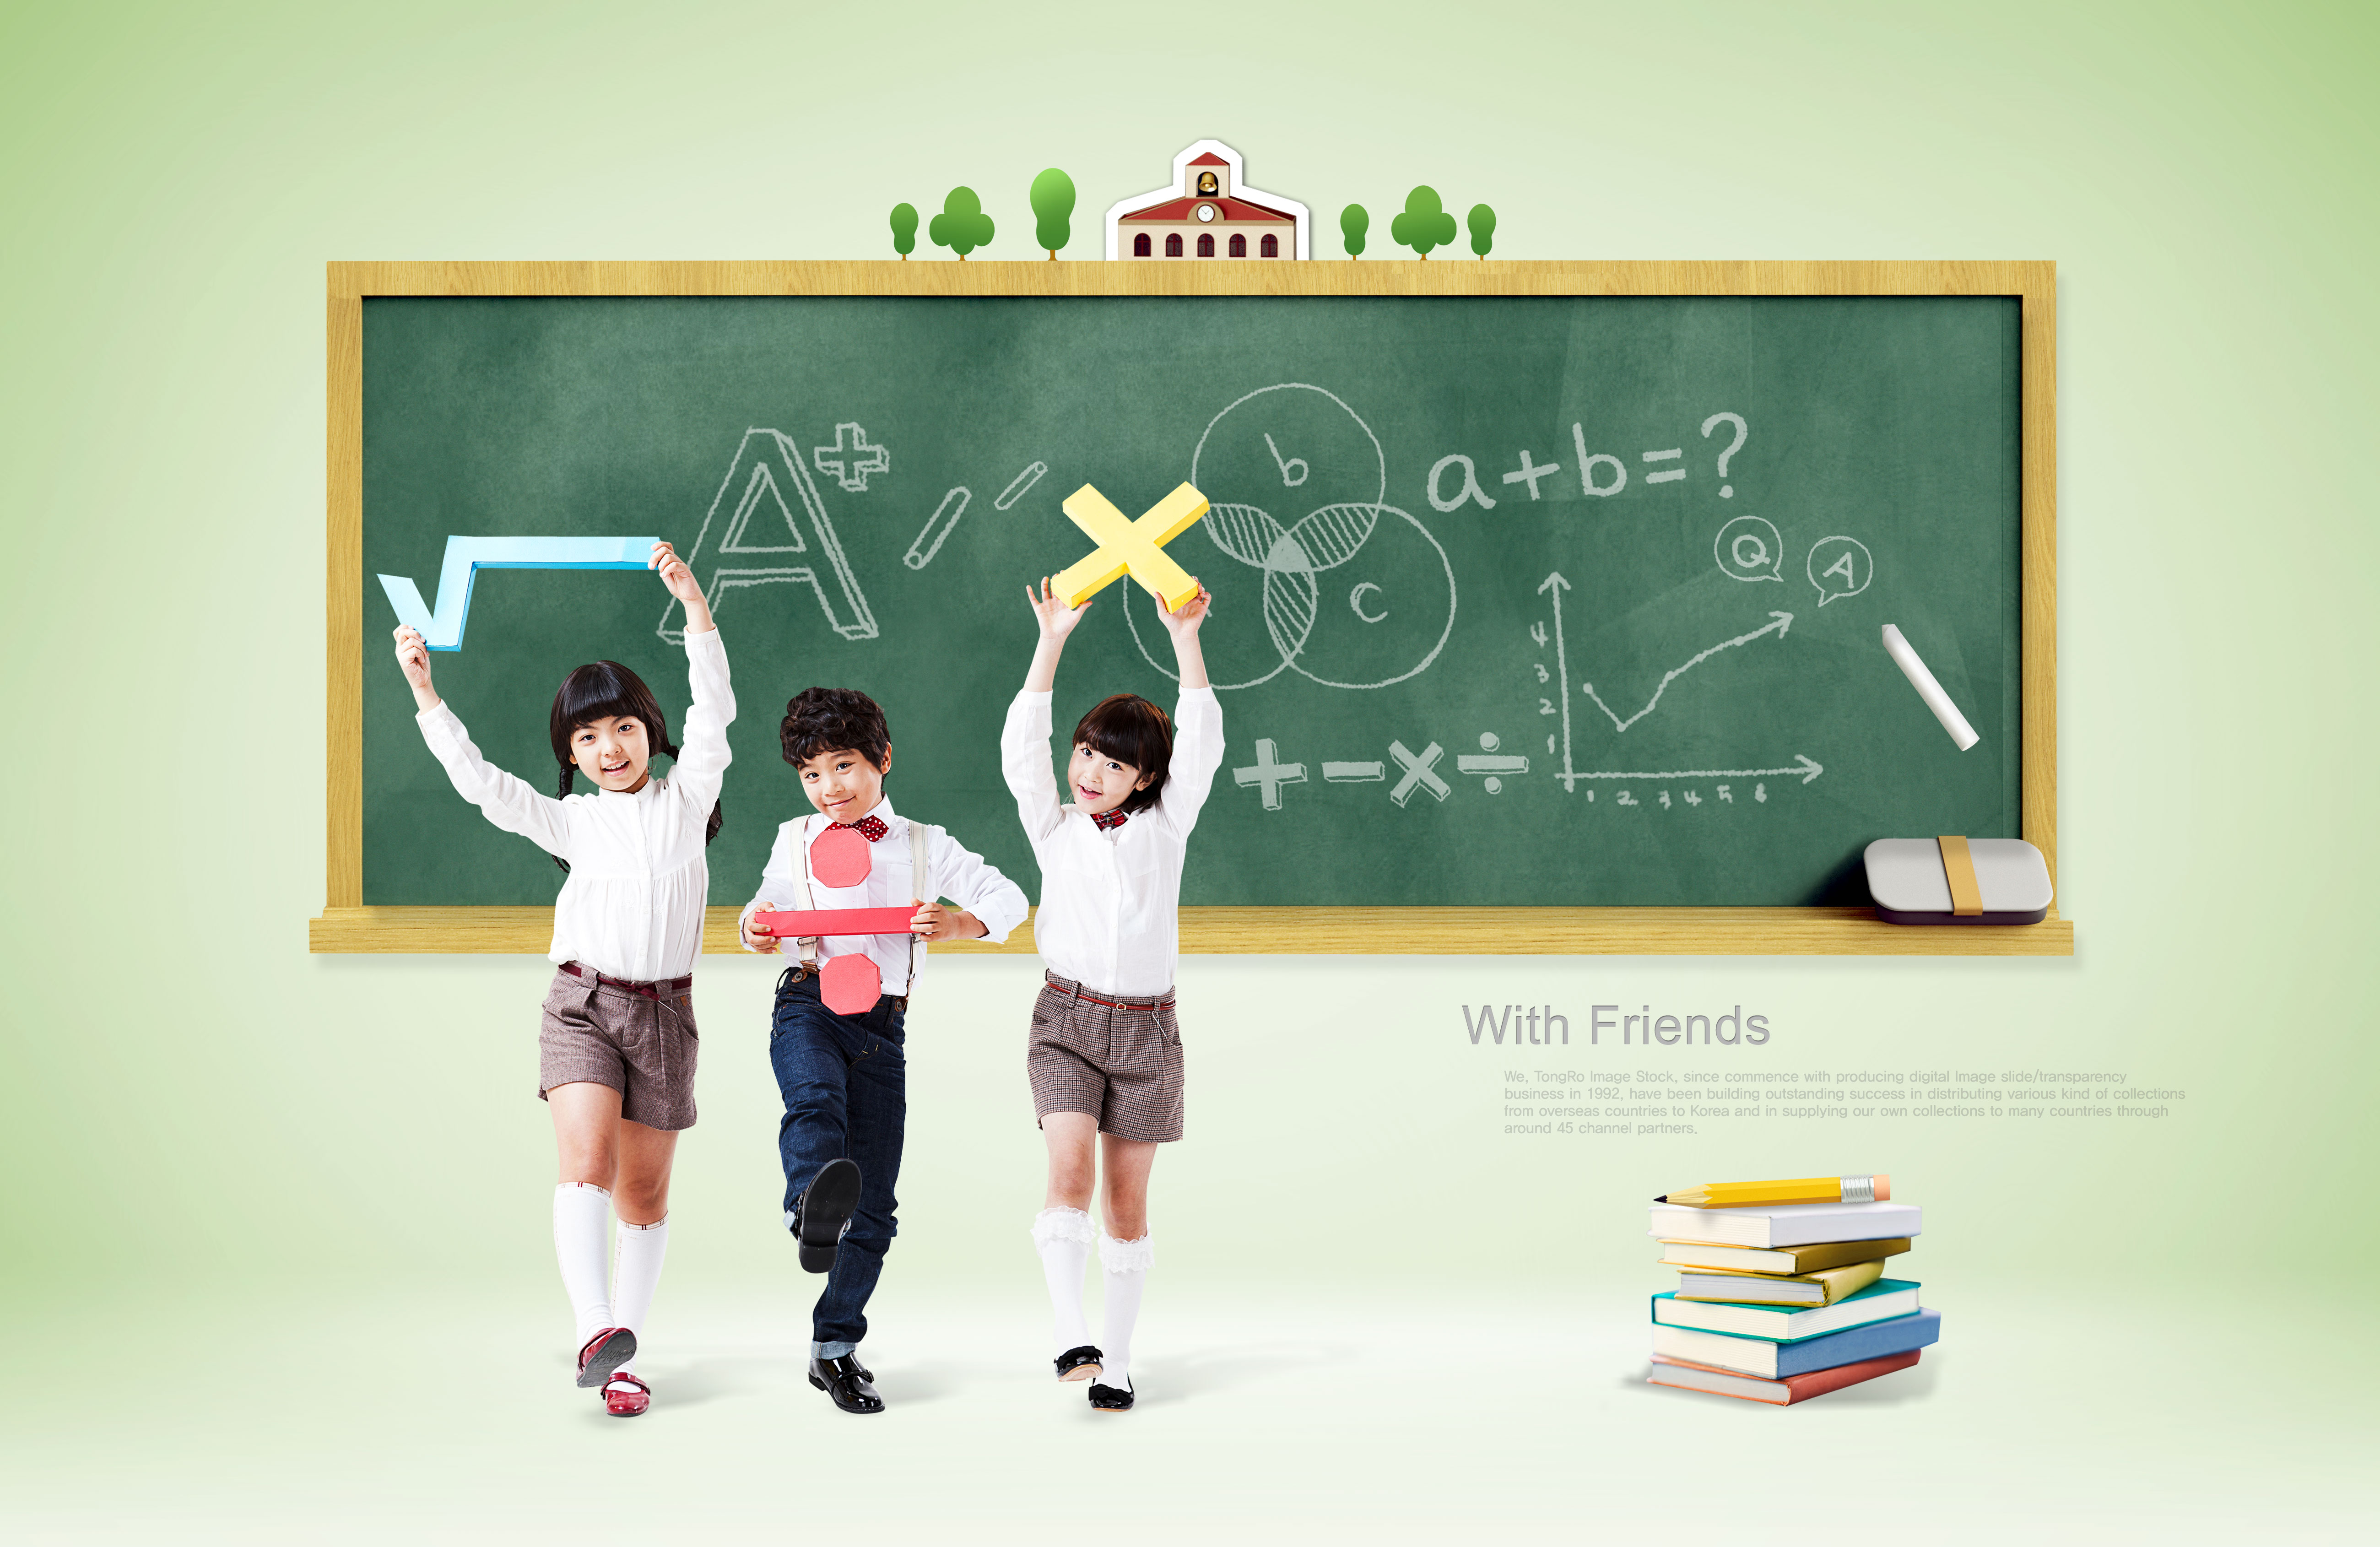 少儿&儿童数学知识教育主题海报模板[PSD]插图